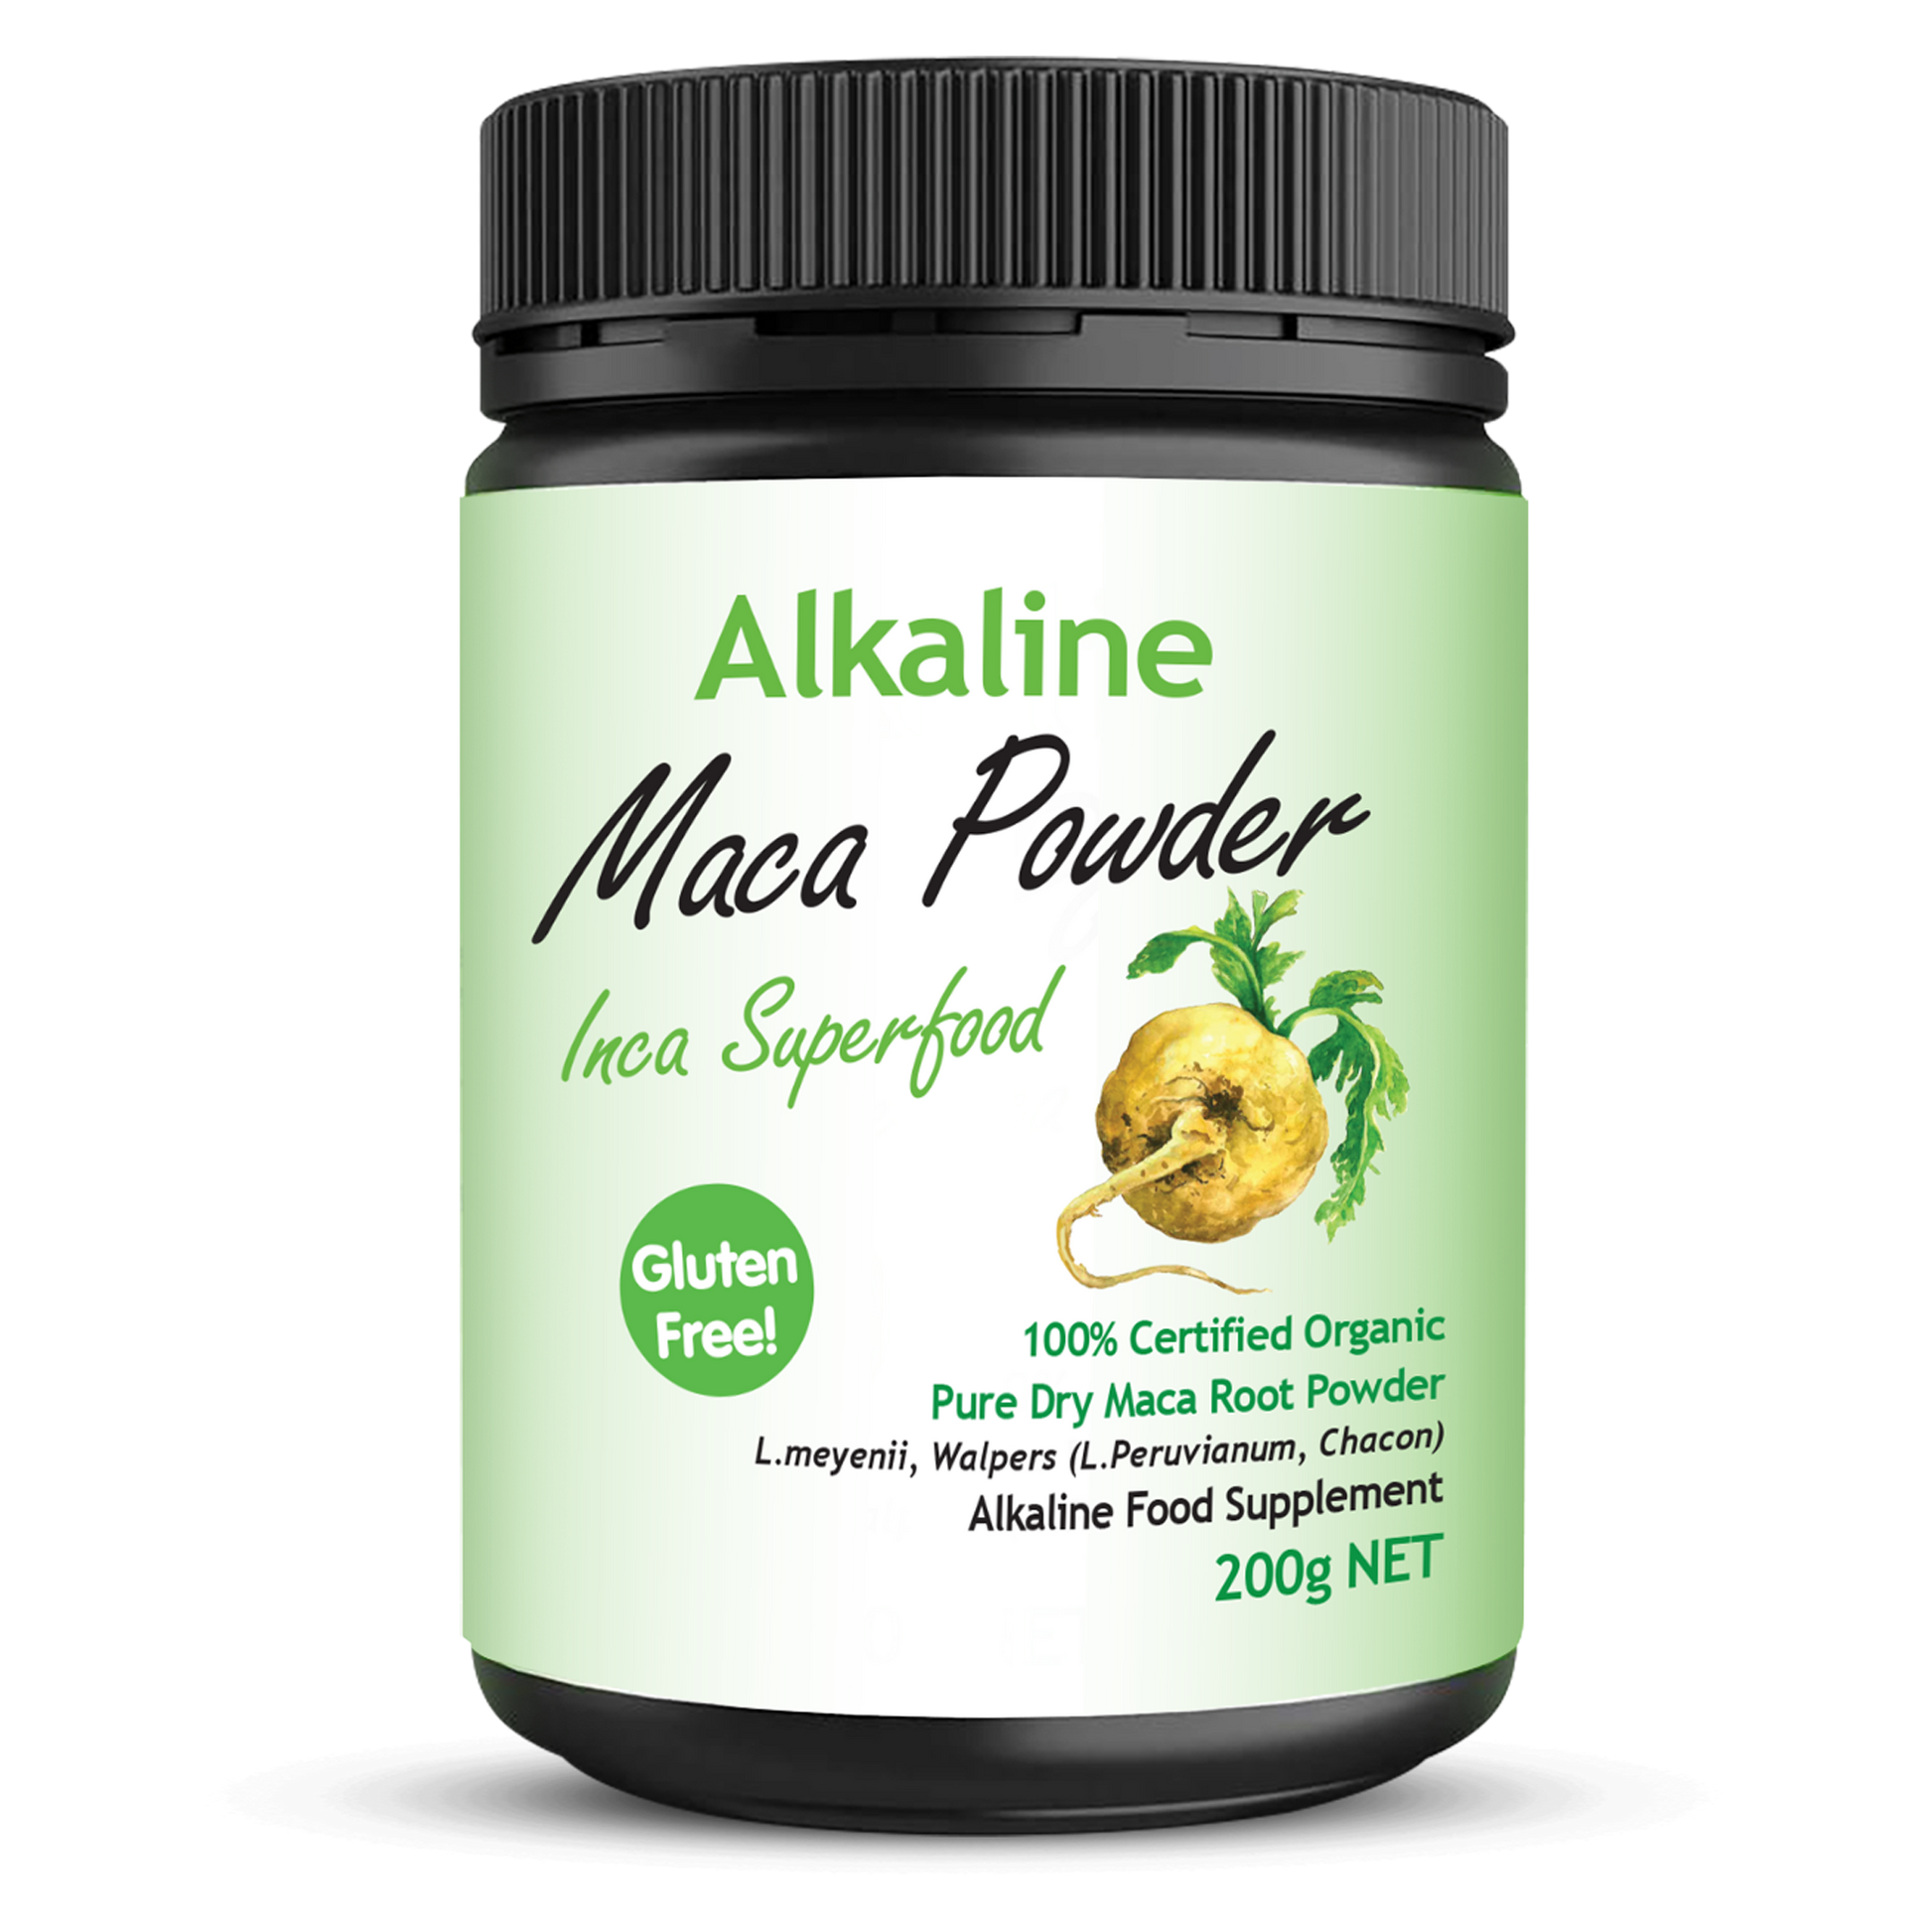 Alkaline Maca Powder